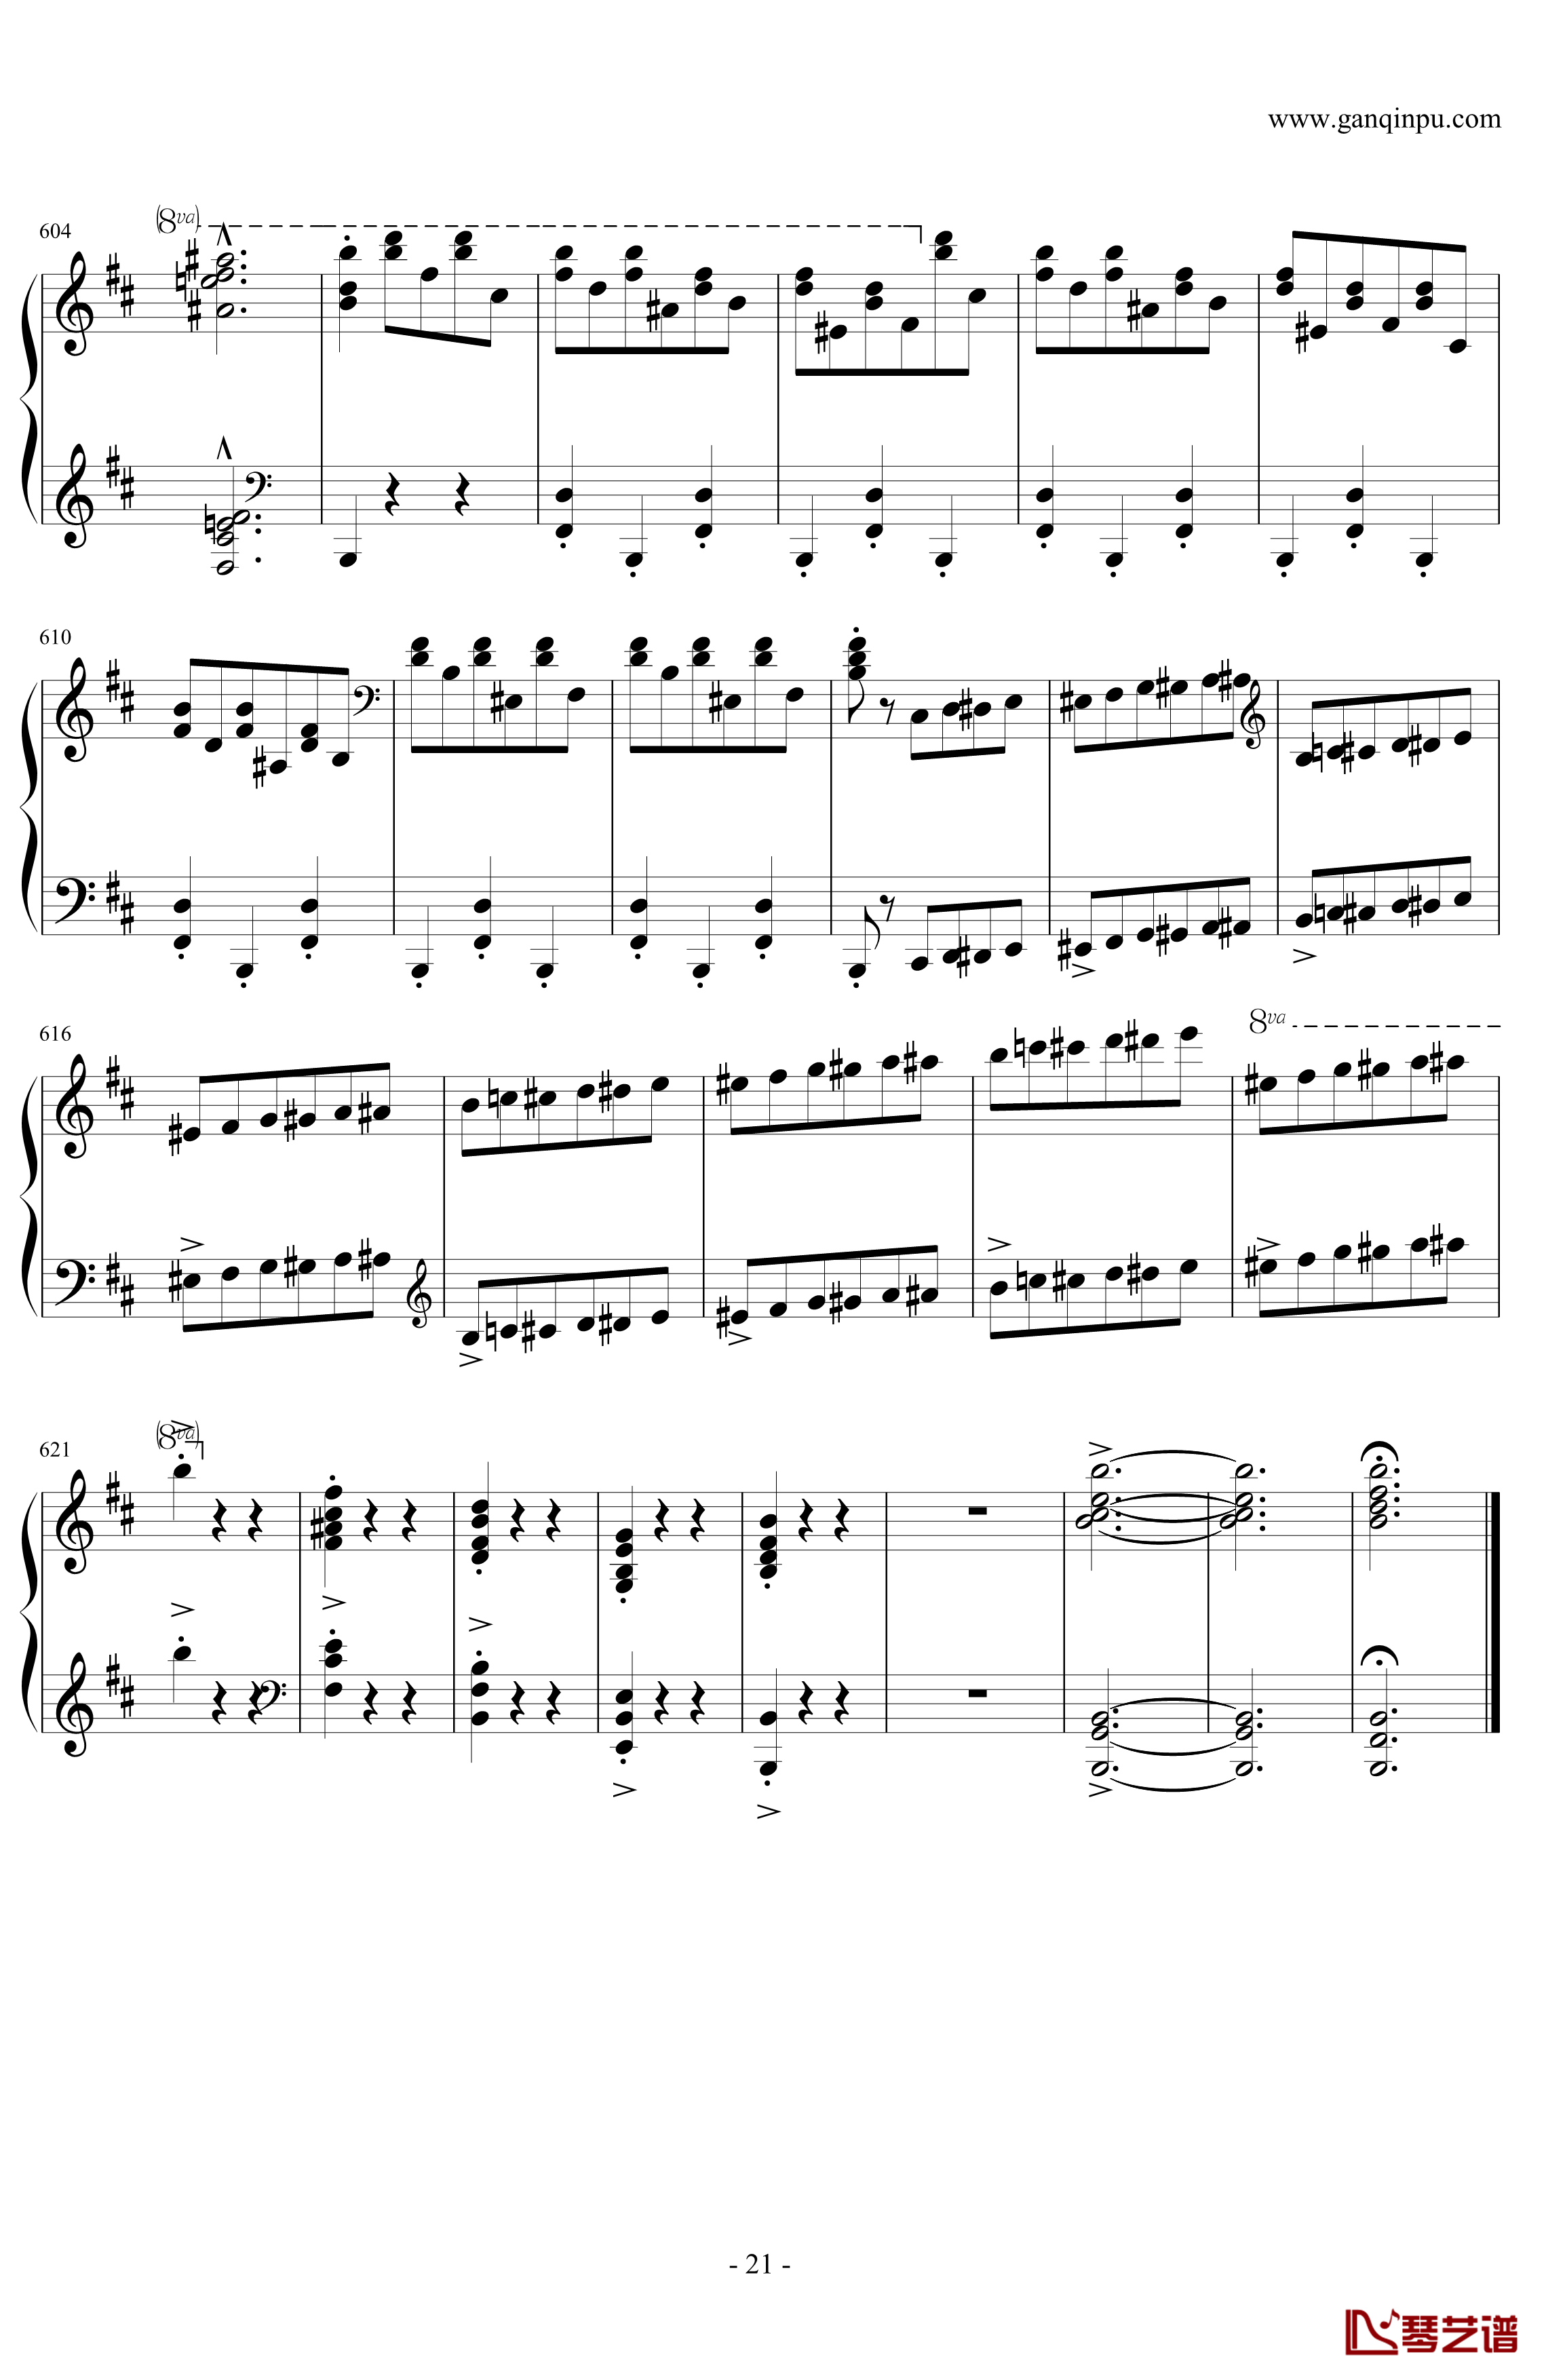 肖邦第一谐谑曲钢琴谱-肖邦-chopin21